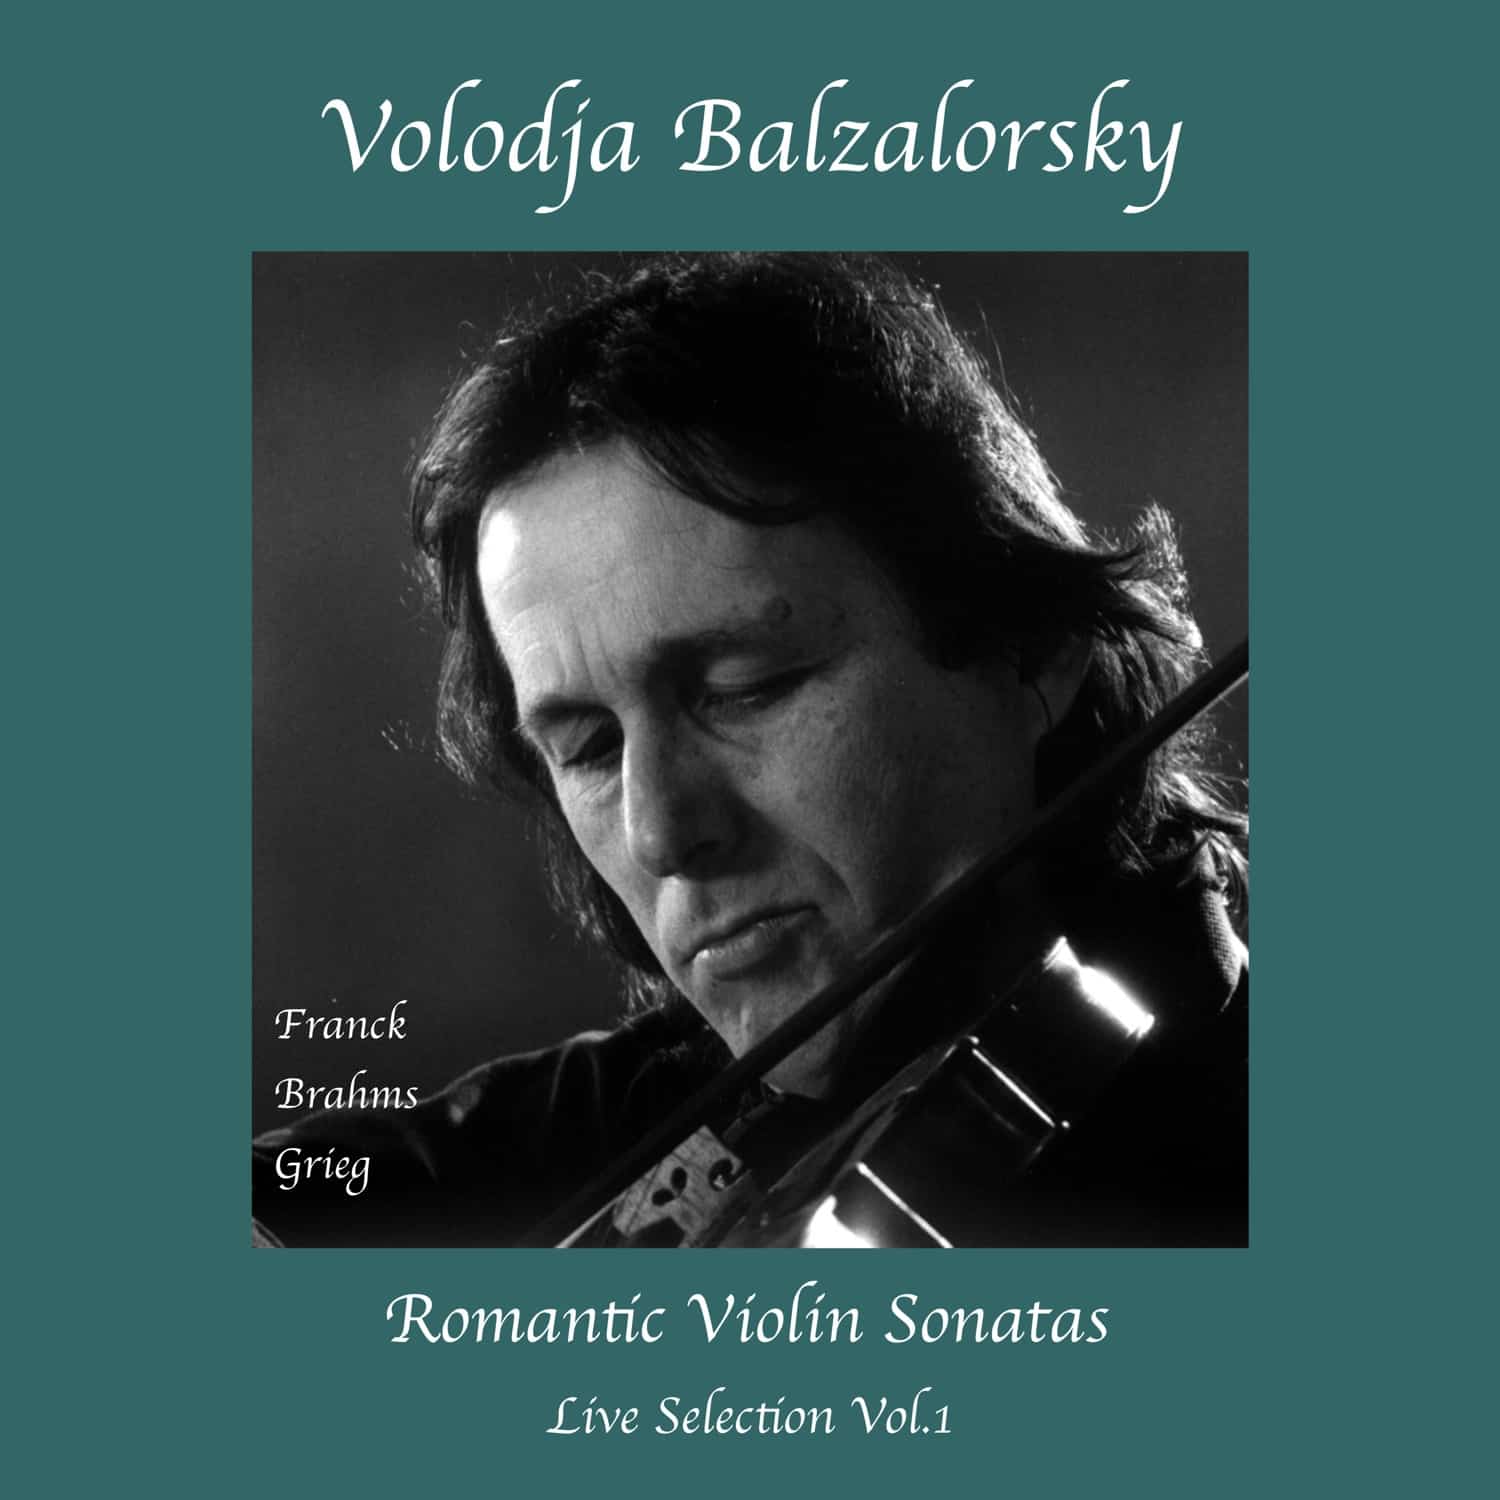 Quatre nominations pour Volodja Balzalorsky à 13. INDÉPENDANT MUSIC AWARDS – IMA